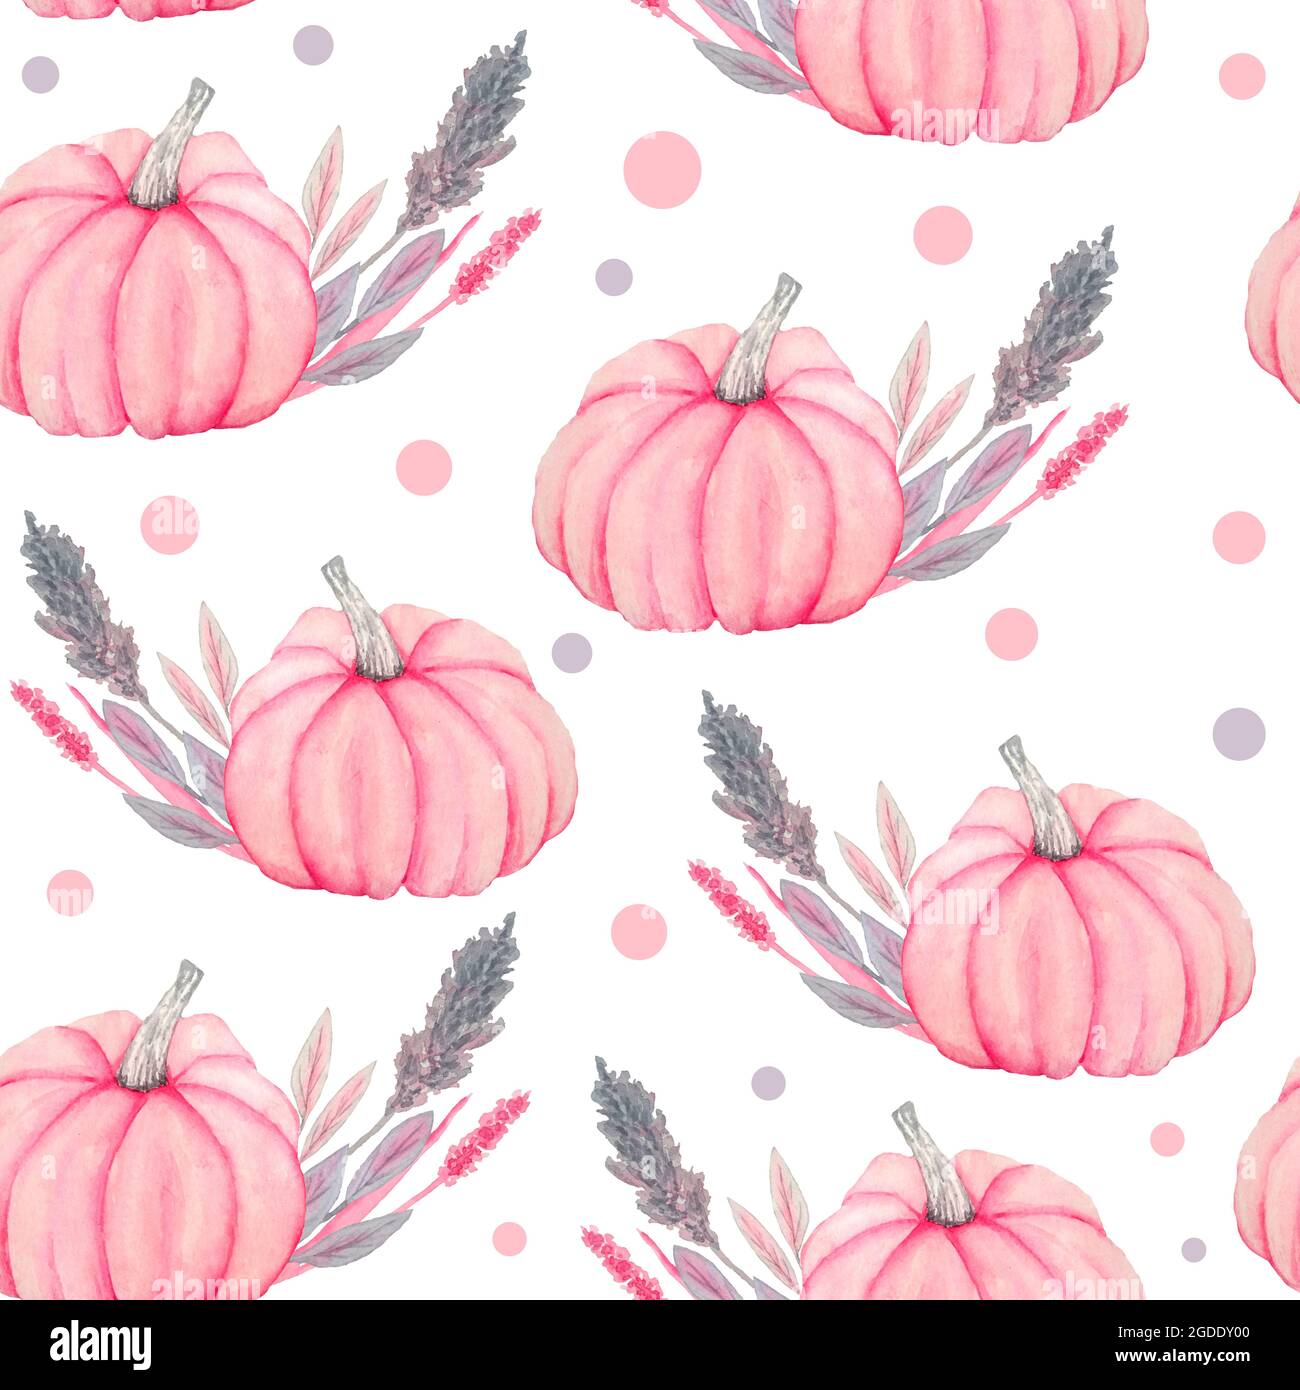 2100 Pink Pumpkin Illustrations RoyaltyFree Vector Graphics  Clip Art   iStock  Pumpkin dessert